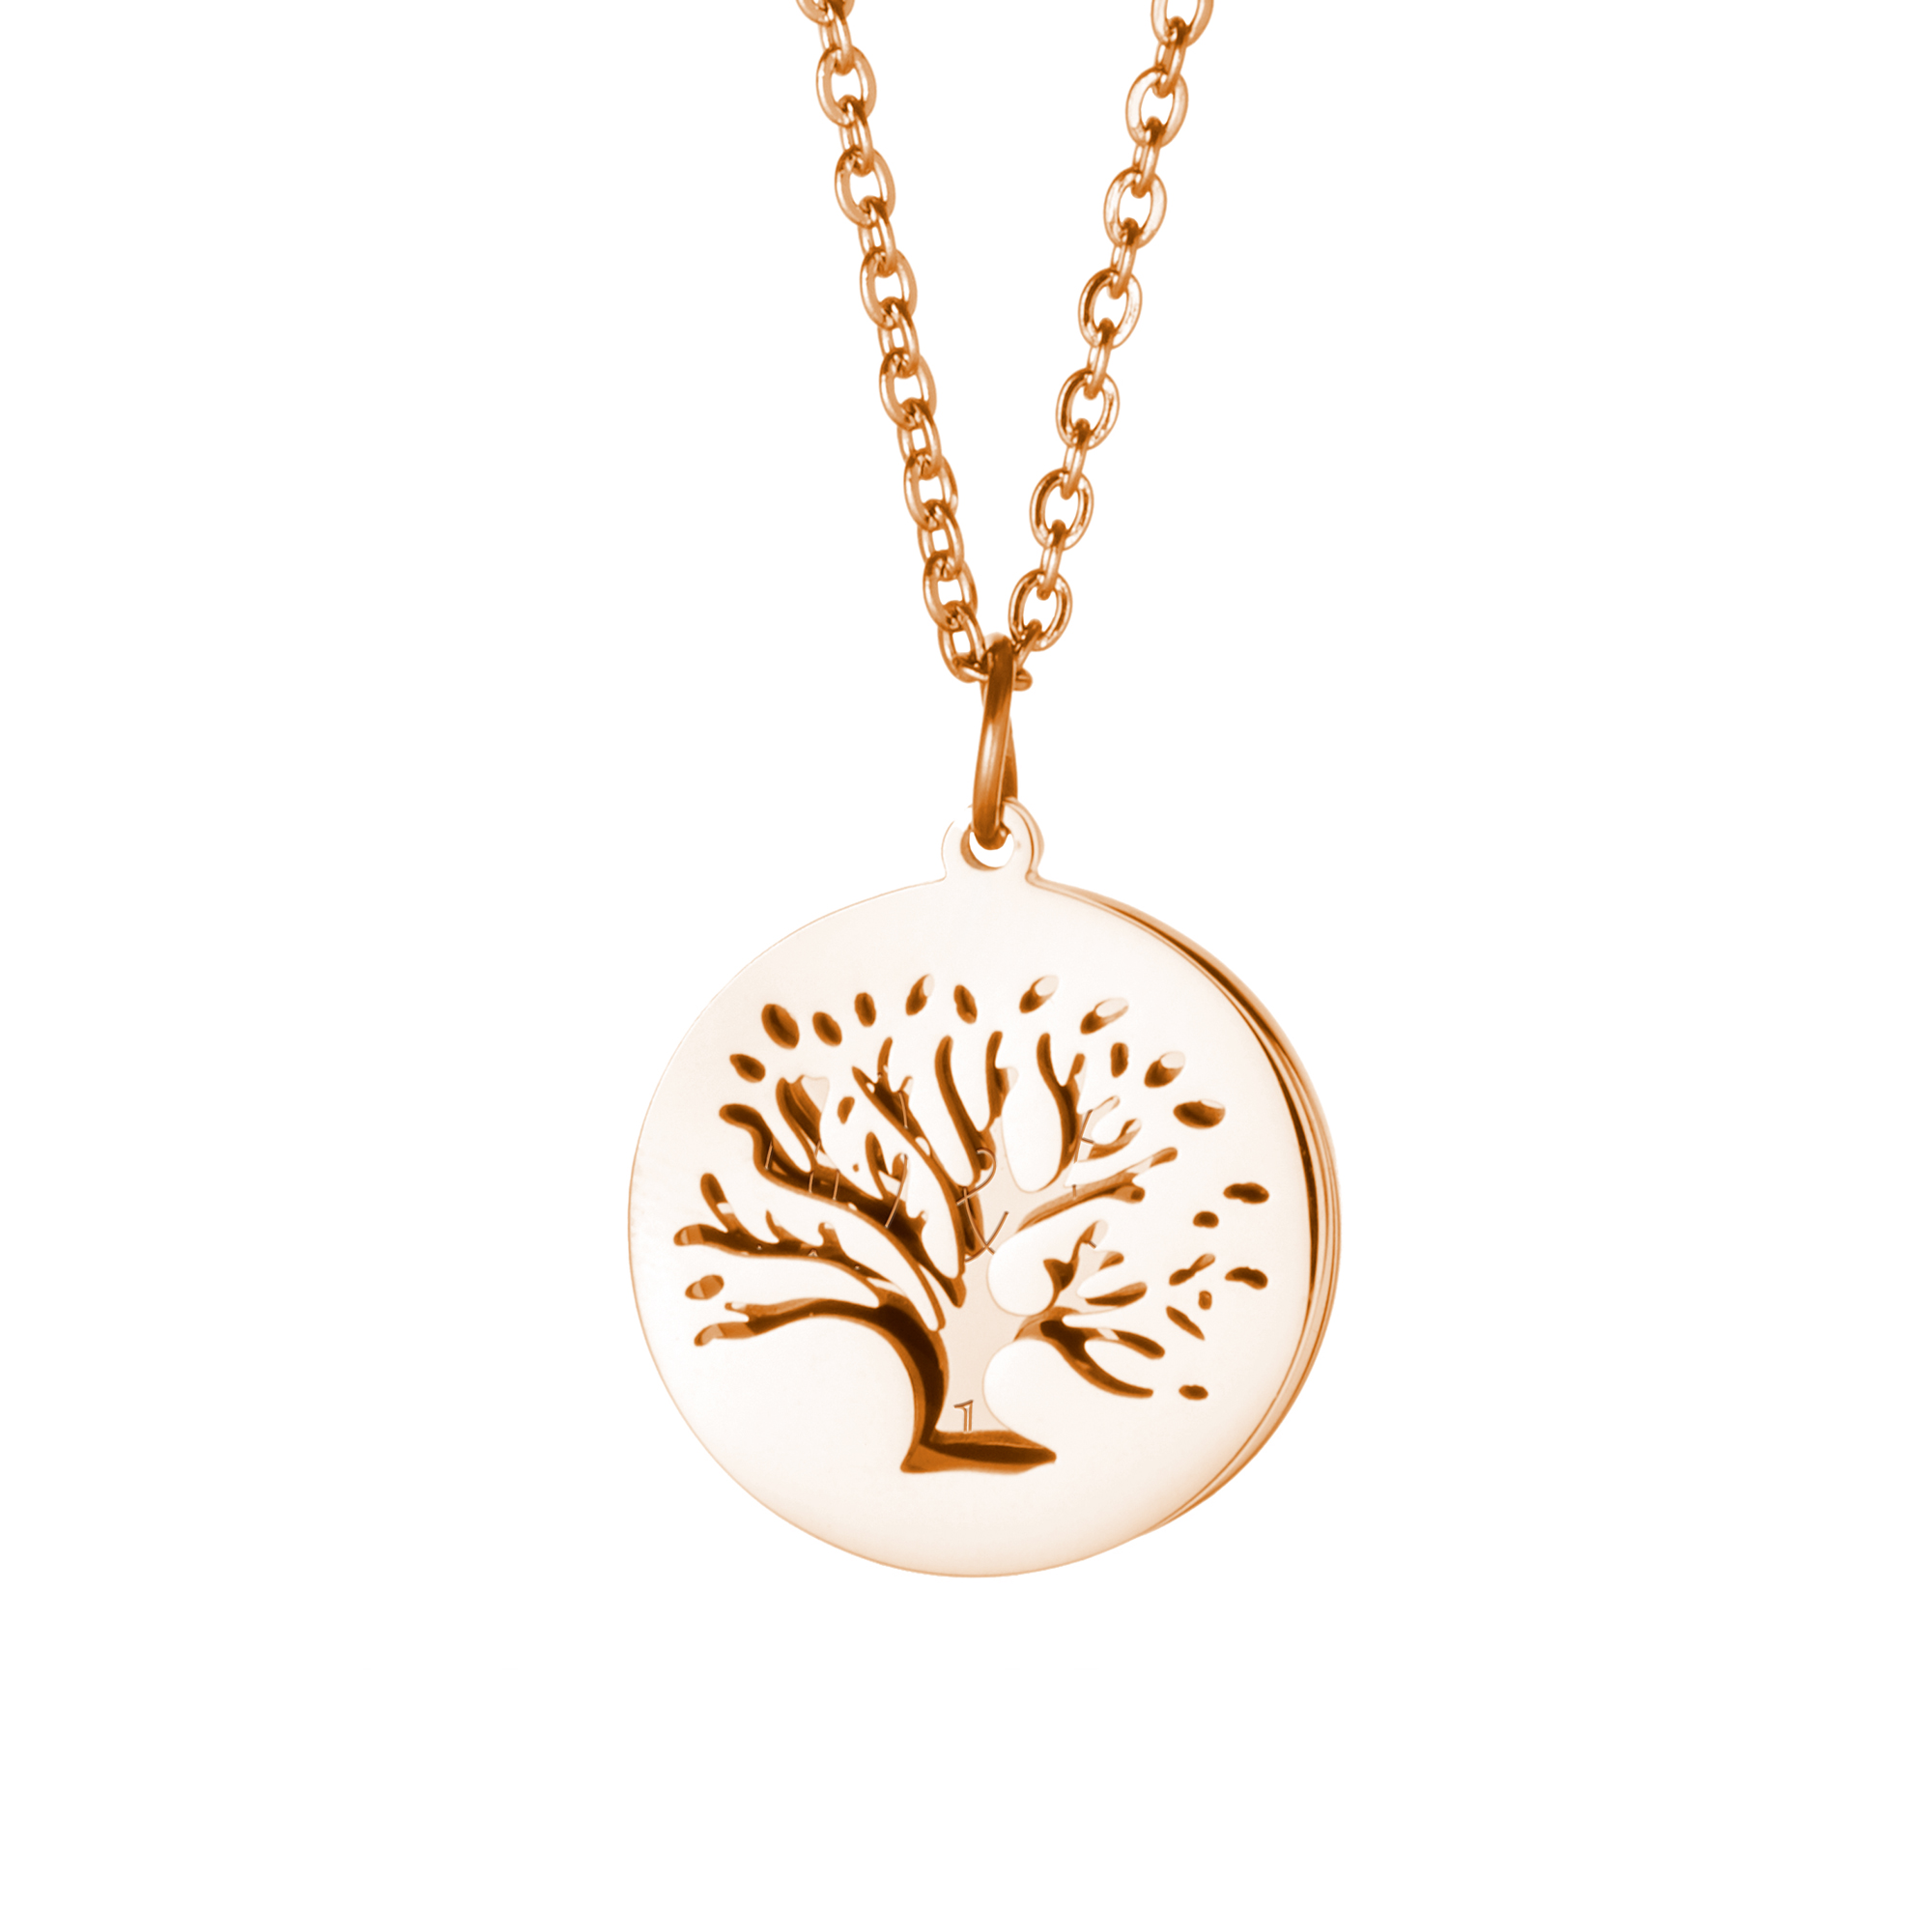 Halskette mit Gravur in Gold - Baum mit Initialen